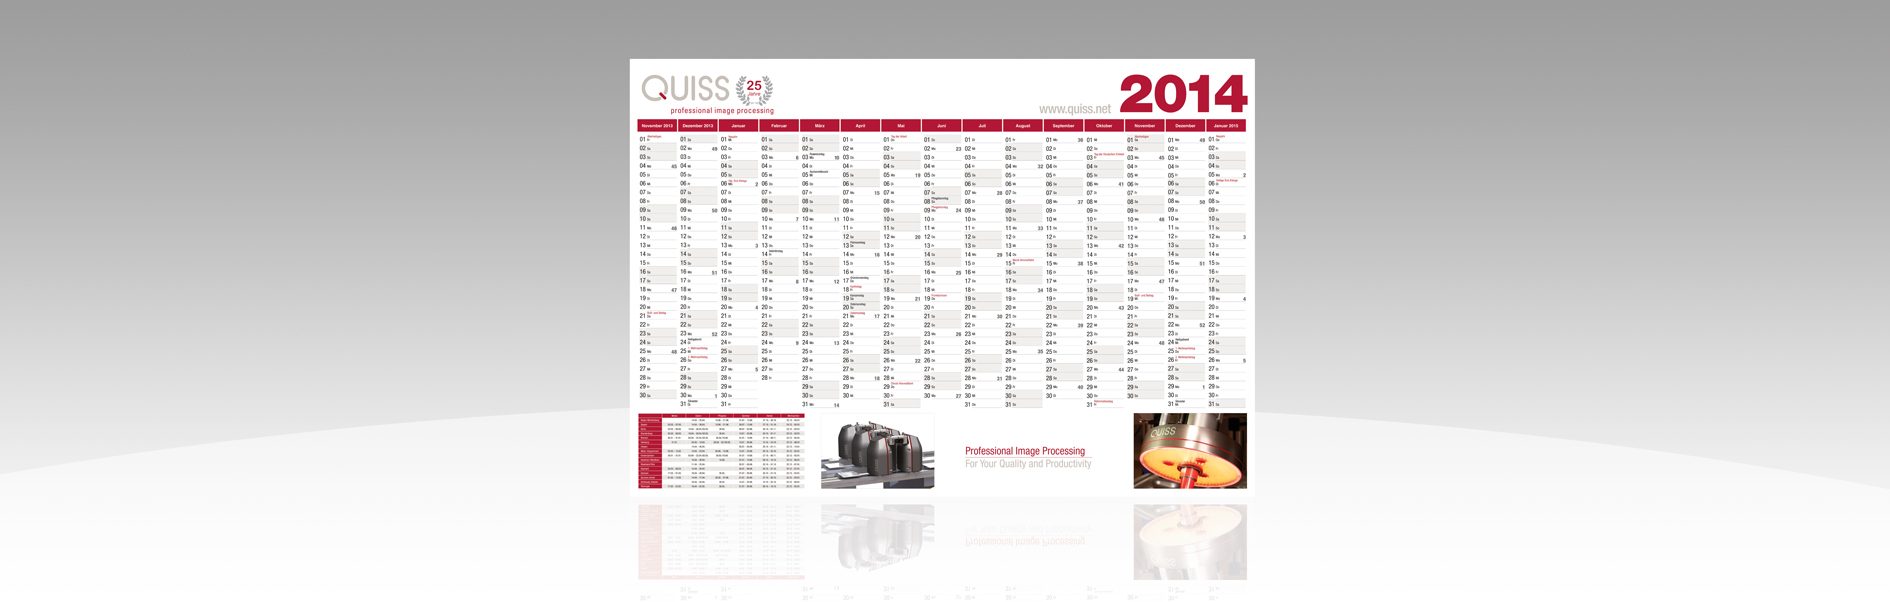 Hier ist der Quiss Wandkalender 2014 abgebildet.